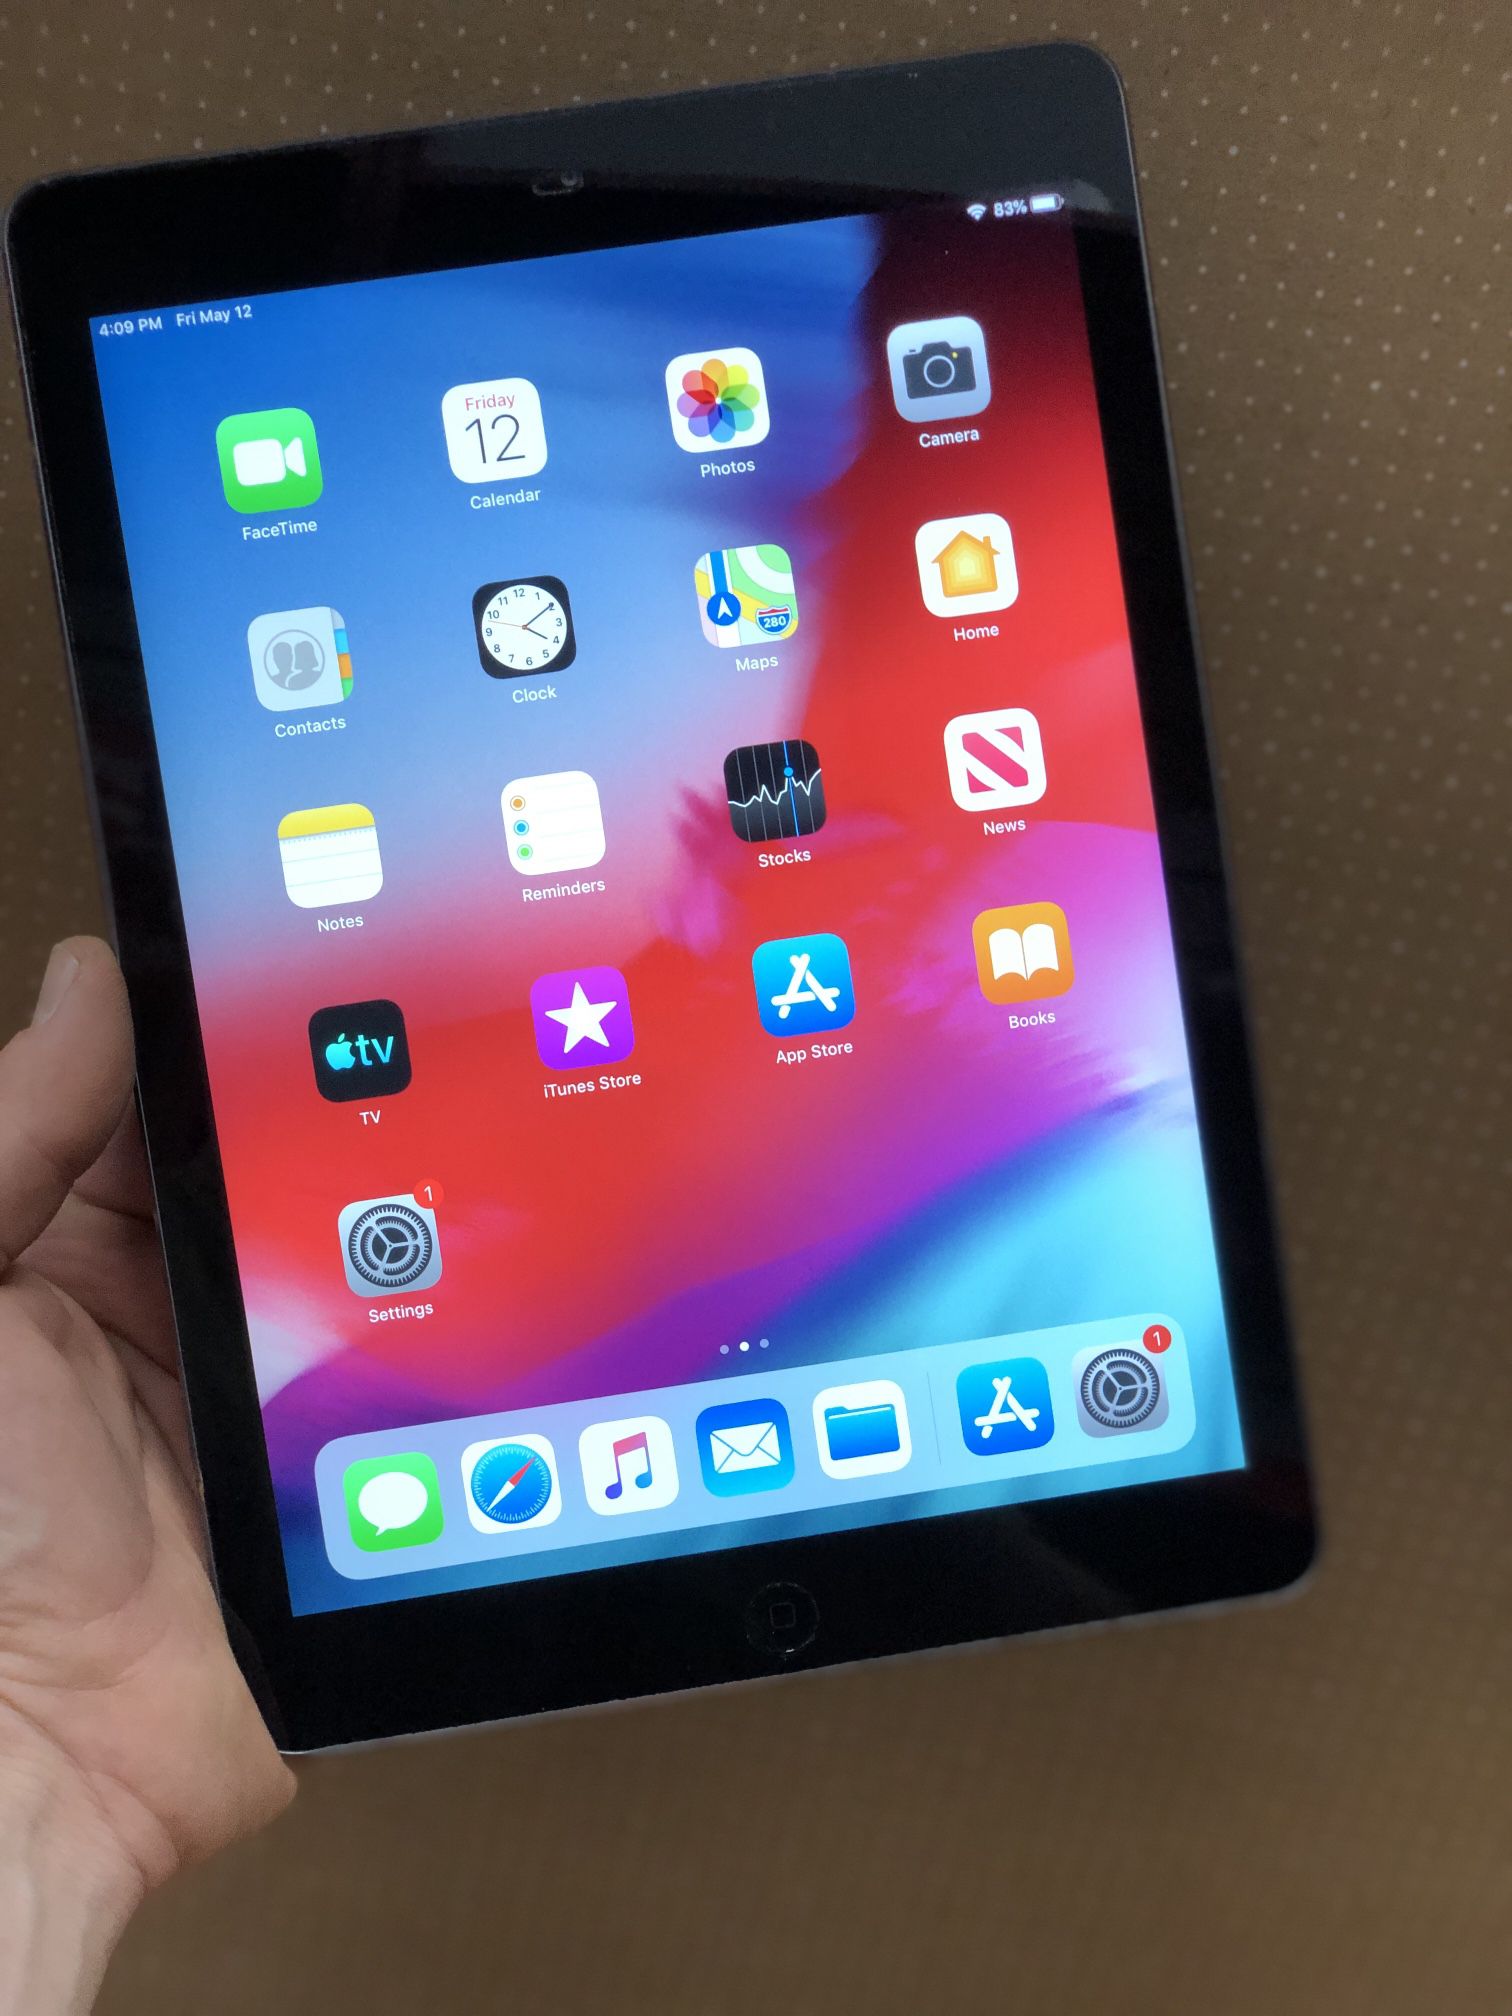 Apple iPad Air 1st Gen 32GB